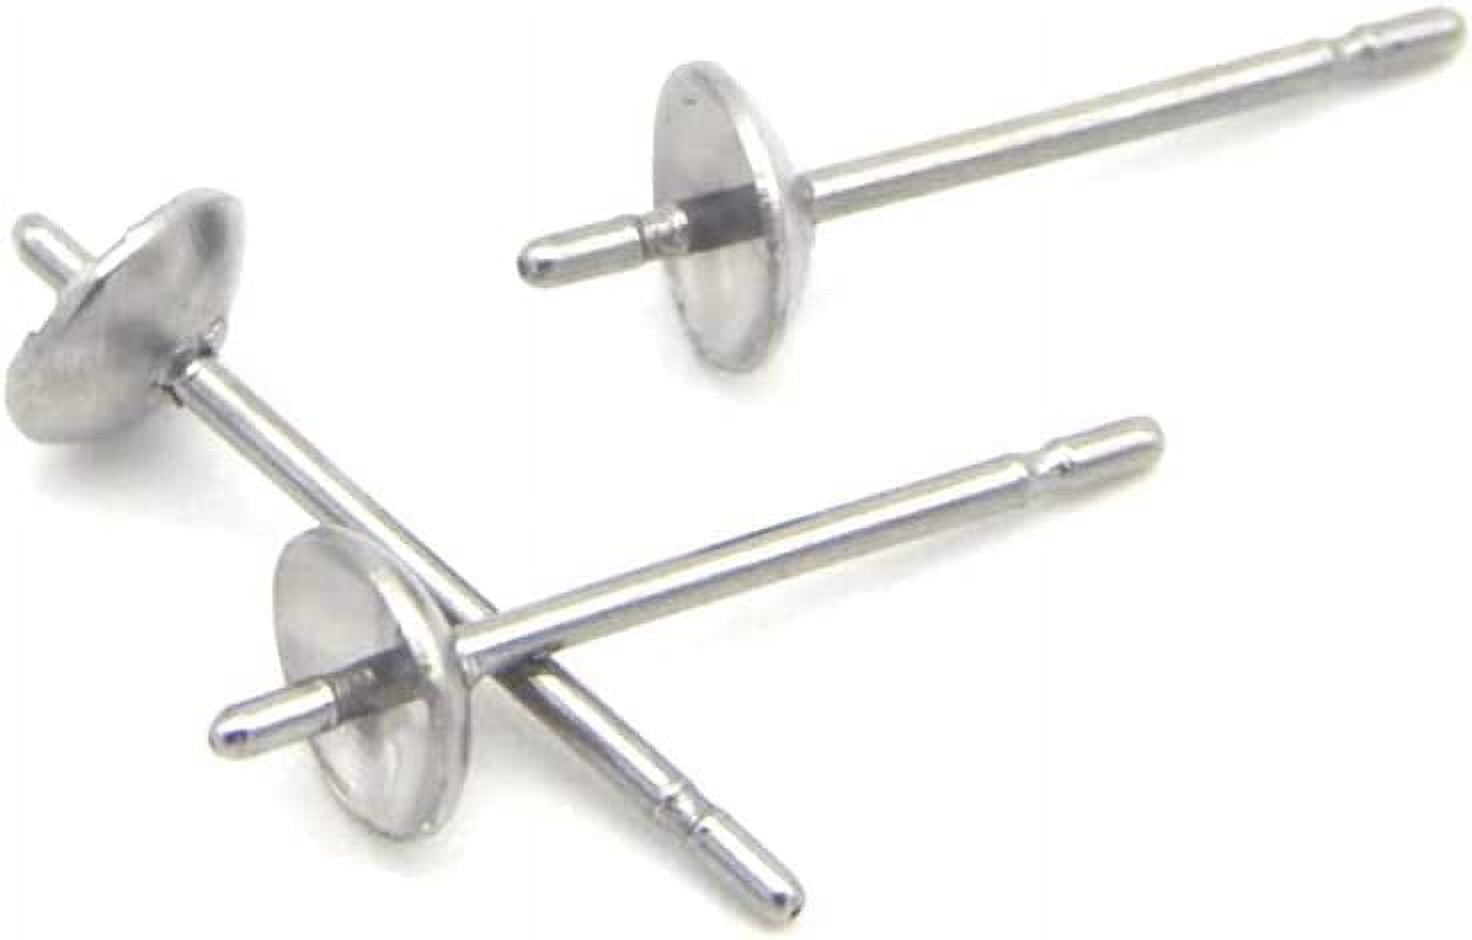 Adabele 200pcs Hypoallergenic Stud Earring Posts Findings Silver Plated  Brass 8mm Flat Board Glue On Setting with Earnut Backs for Earrings Makings